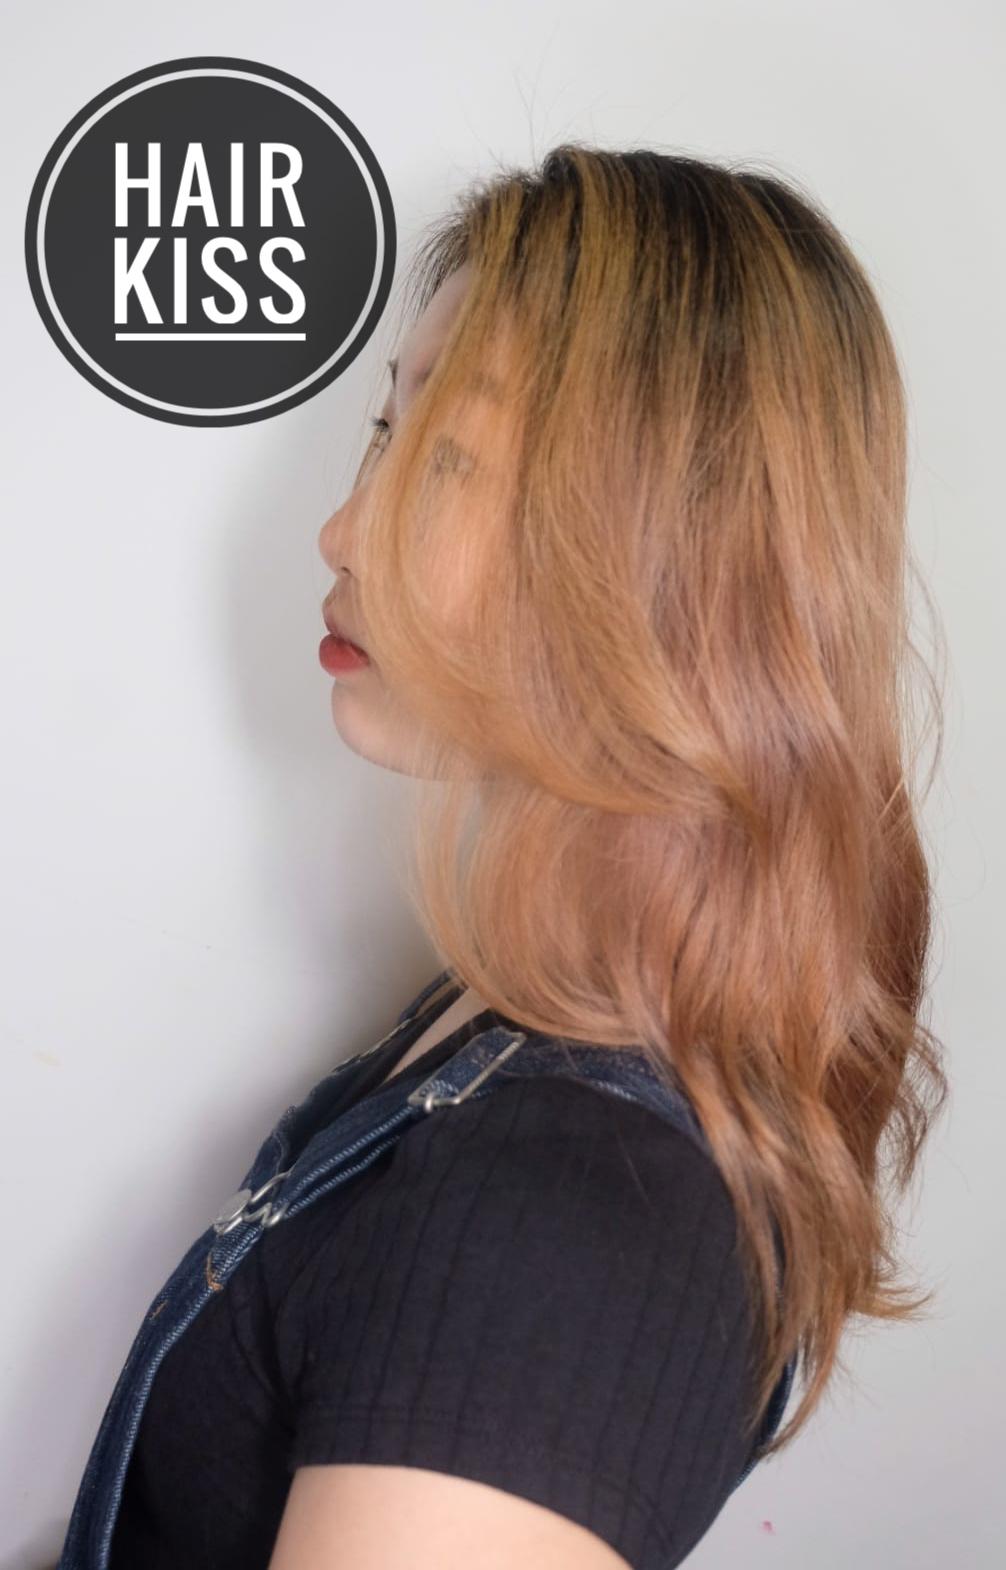 Hair Kiss之髮型作品: Hair kiss ❤️